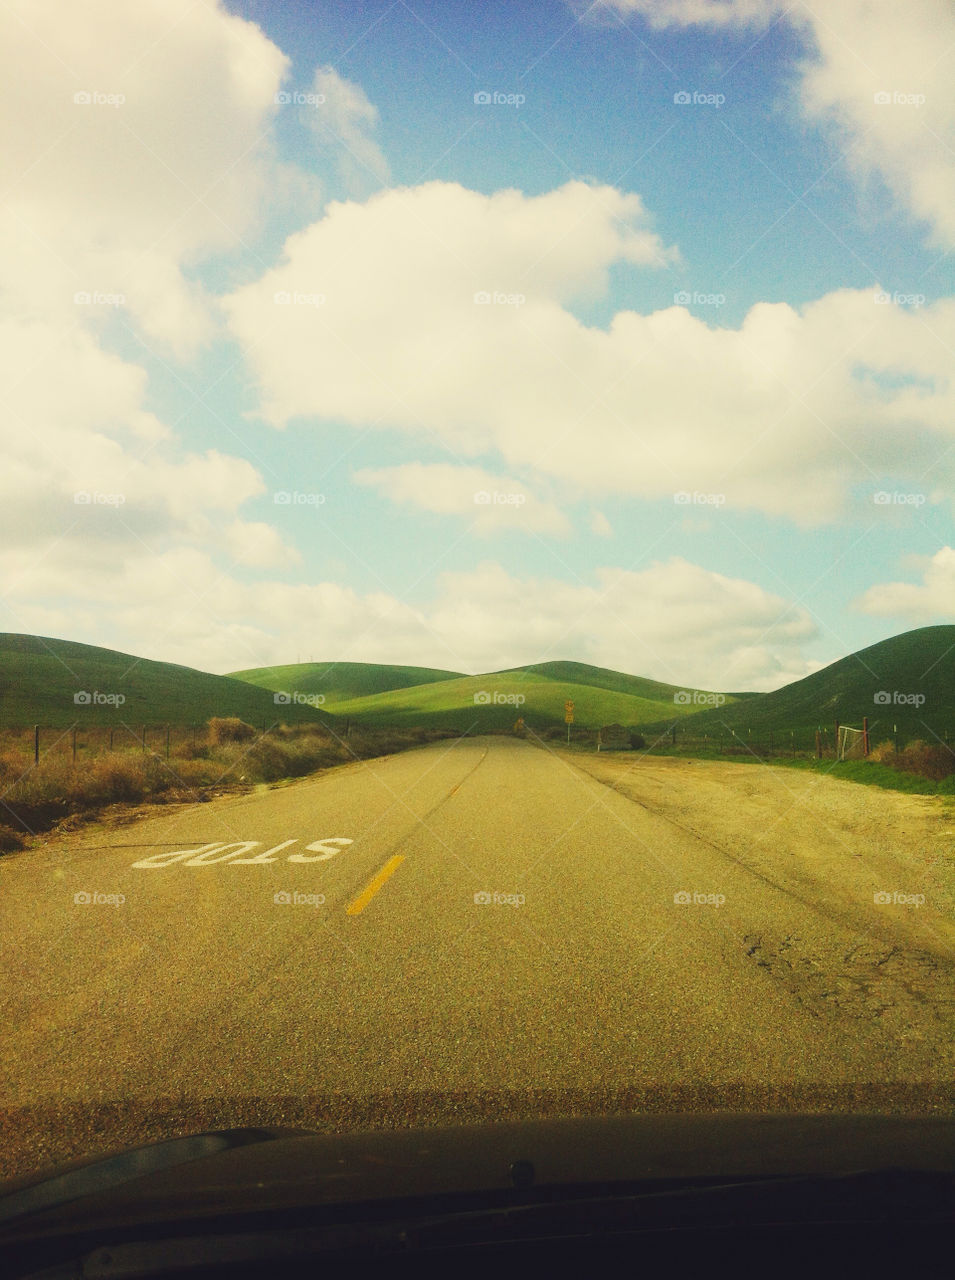 Scenic California road.